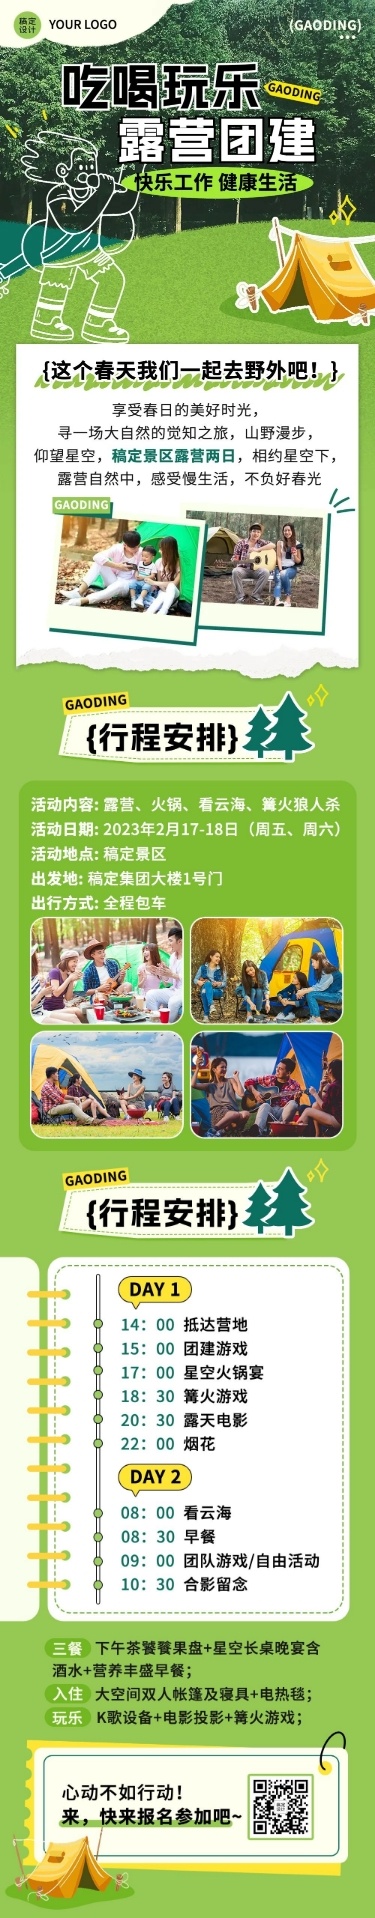 企业团建活动预告露营活动实景涂鸦文章长图